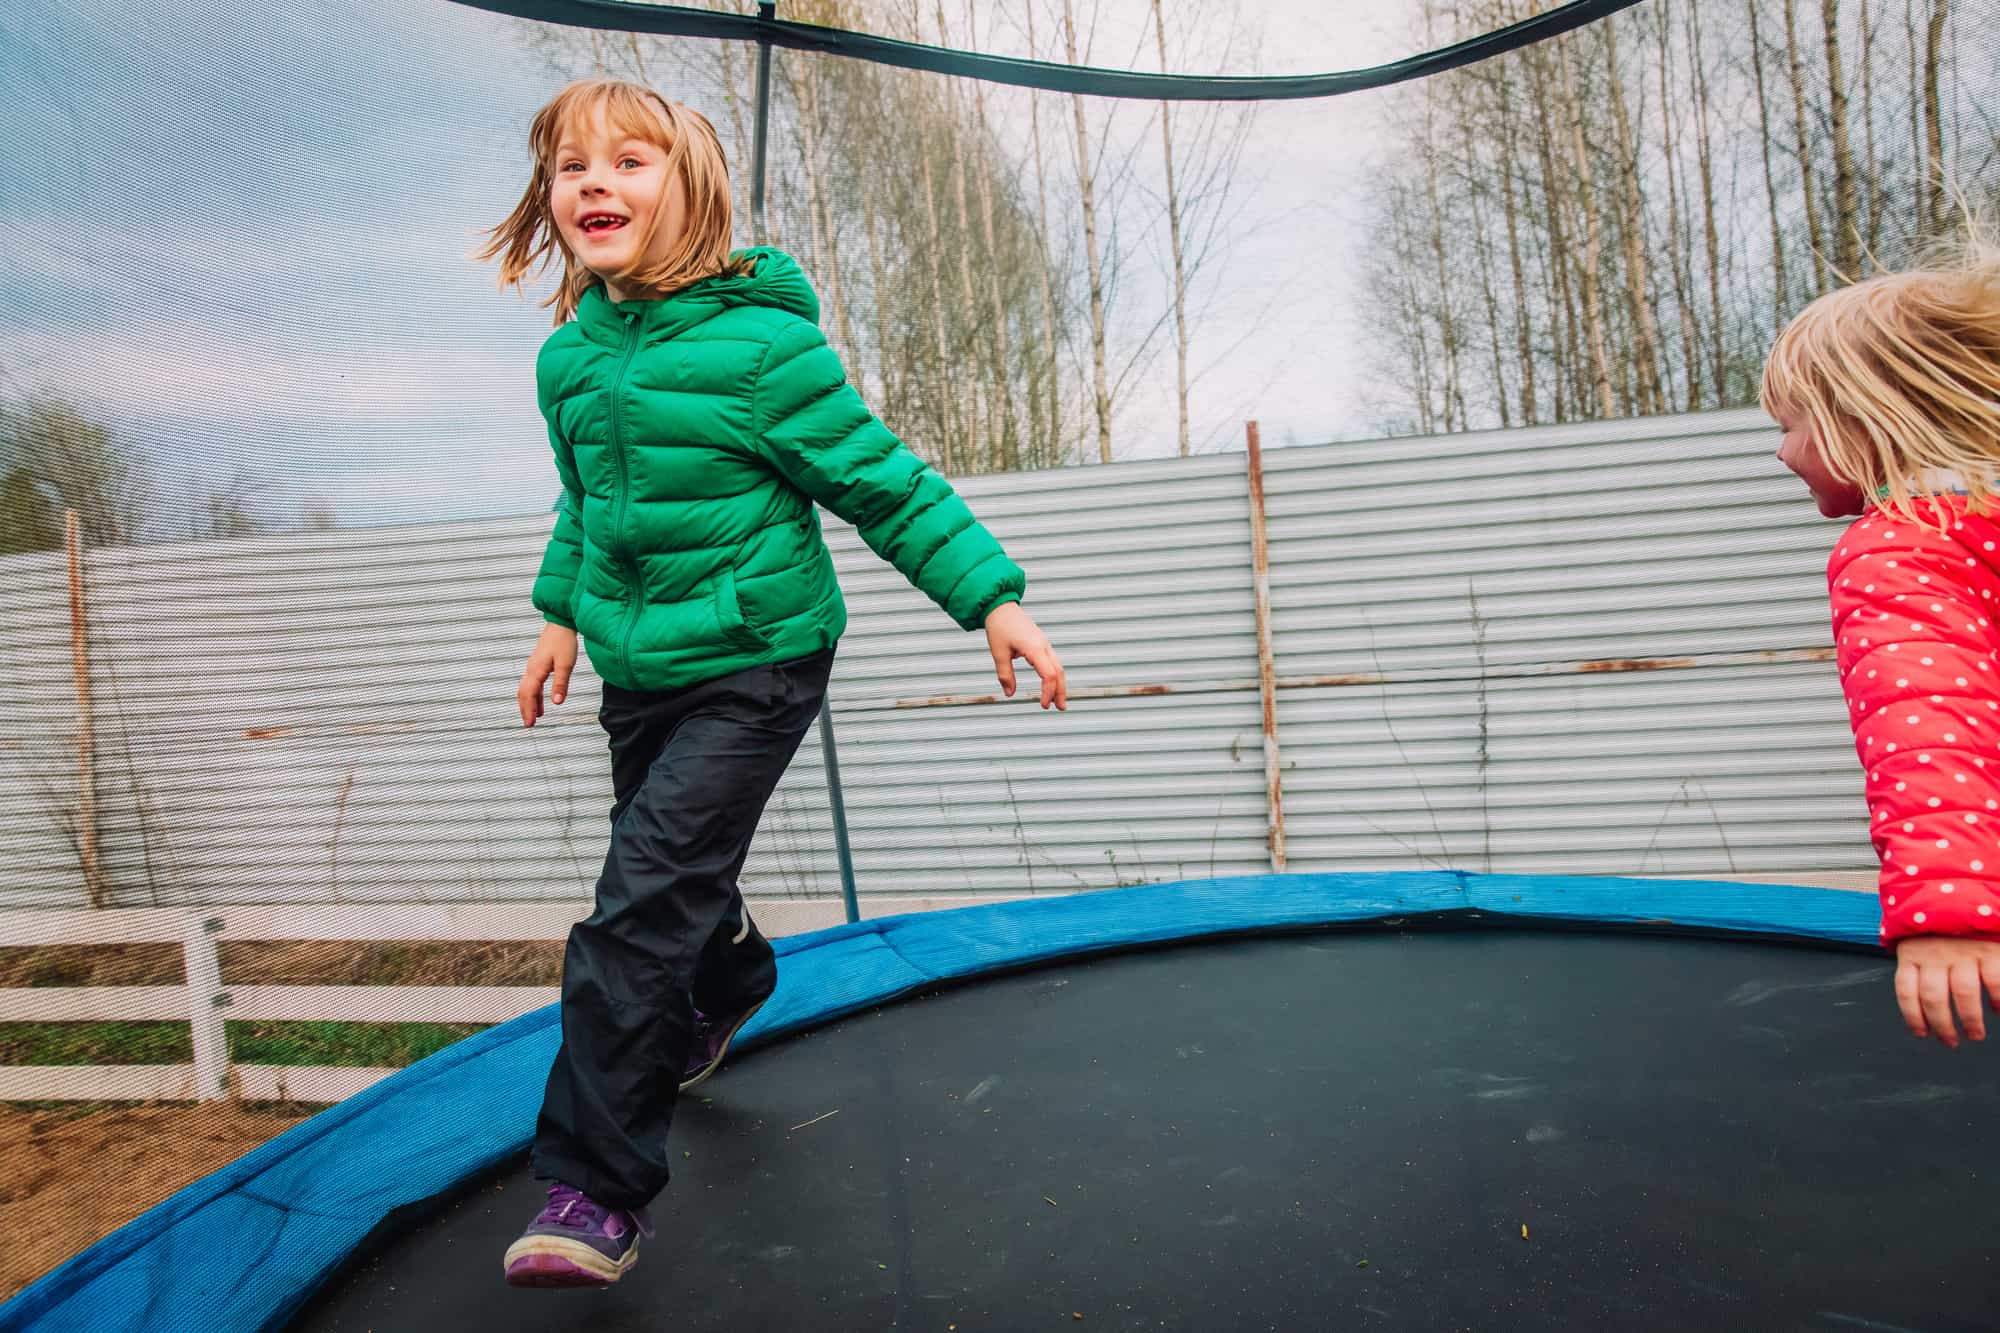 happy little girls enjoy jumping on trampoline - outside in backyard